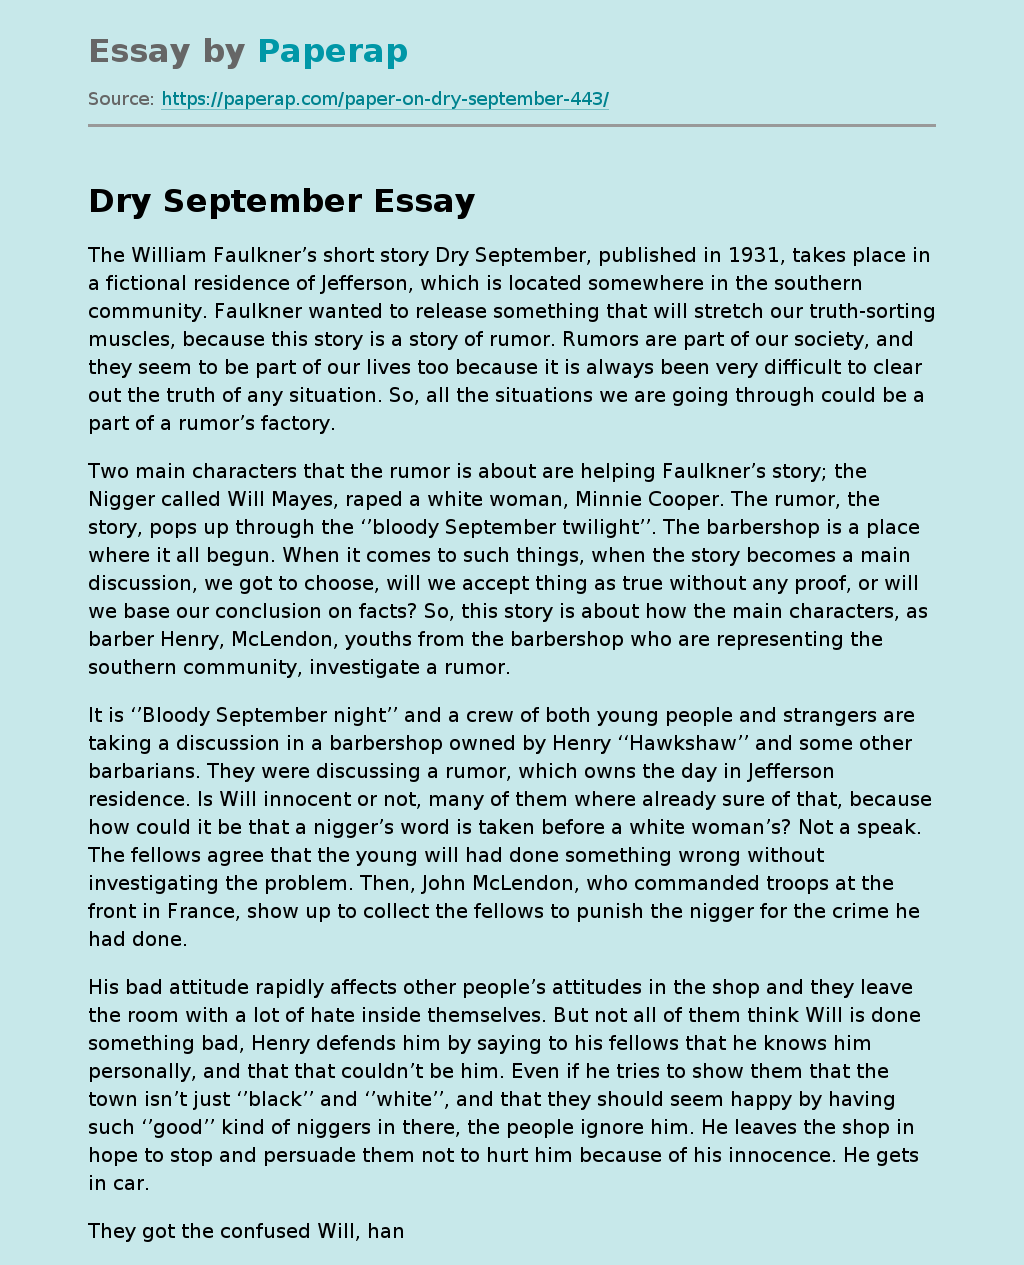 Dry September in Jefferson